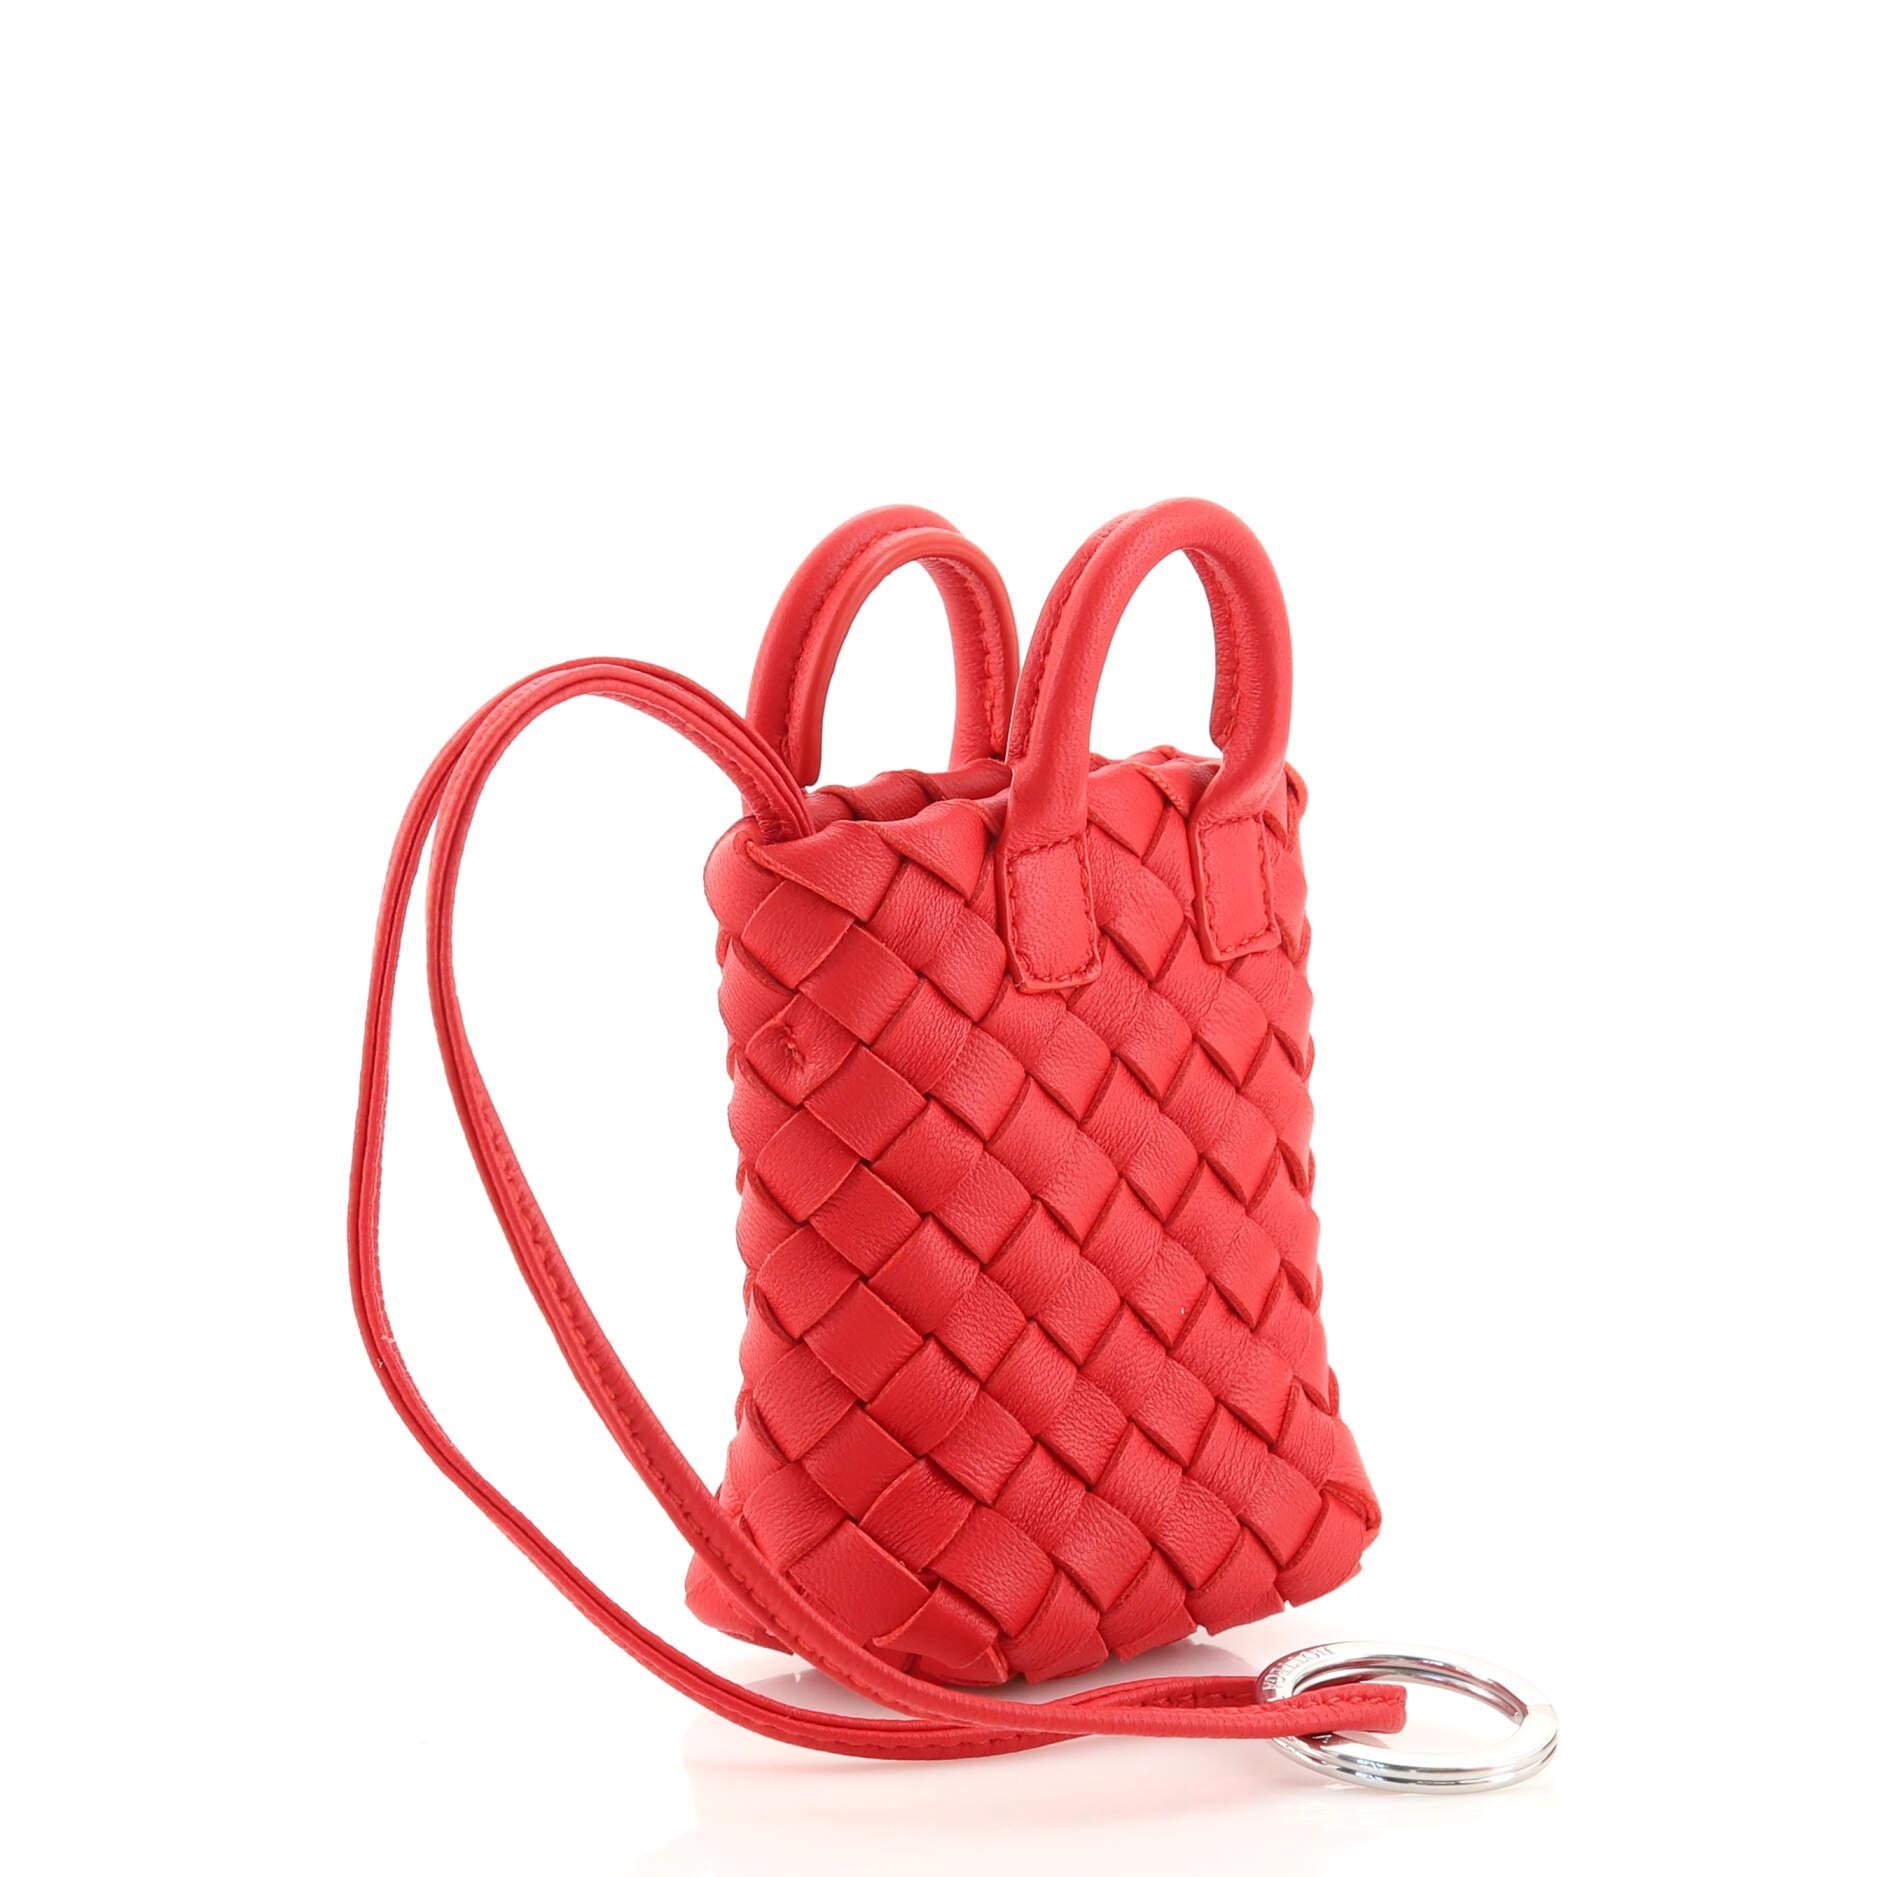 Bottega Veneta Maxi Cabat Bag Charm Intrecciato Nappa In Good Condition In NY, NY